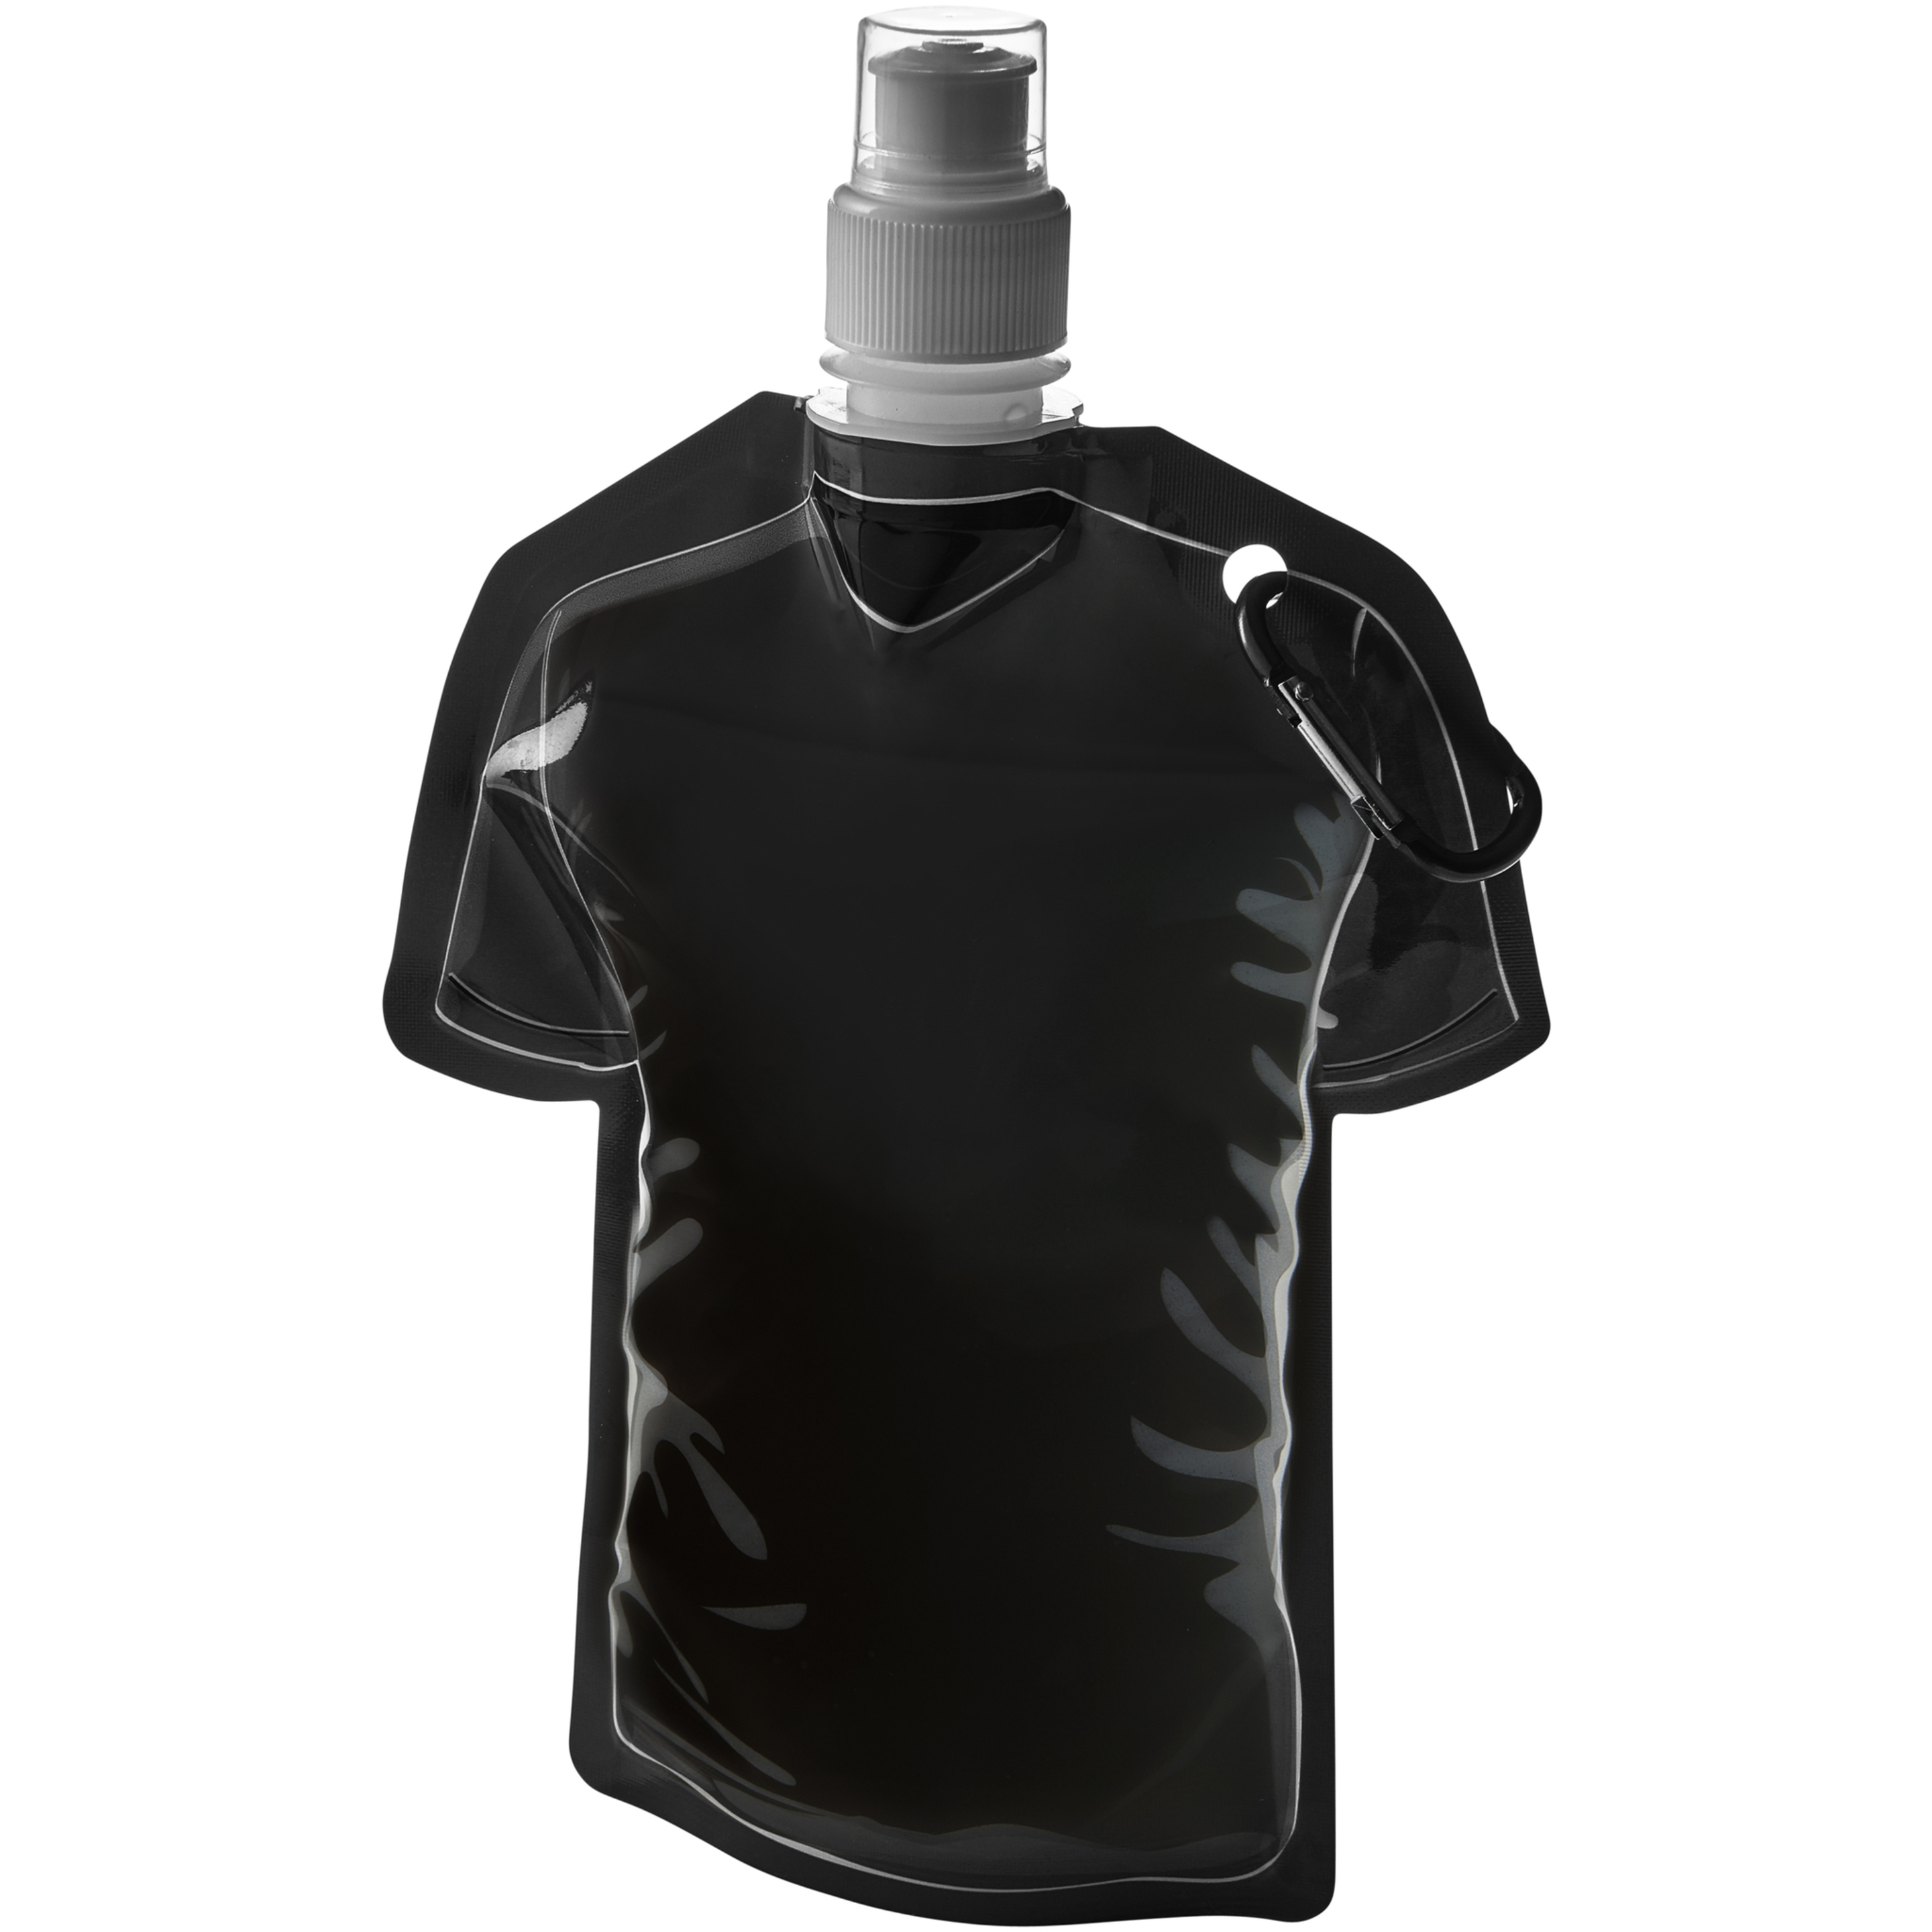 Bolsa De Agua Con Forma De Camiseta De Fútbol Modelo Goal Bullet (Negro)